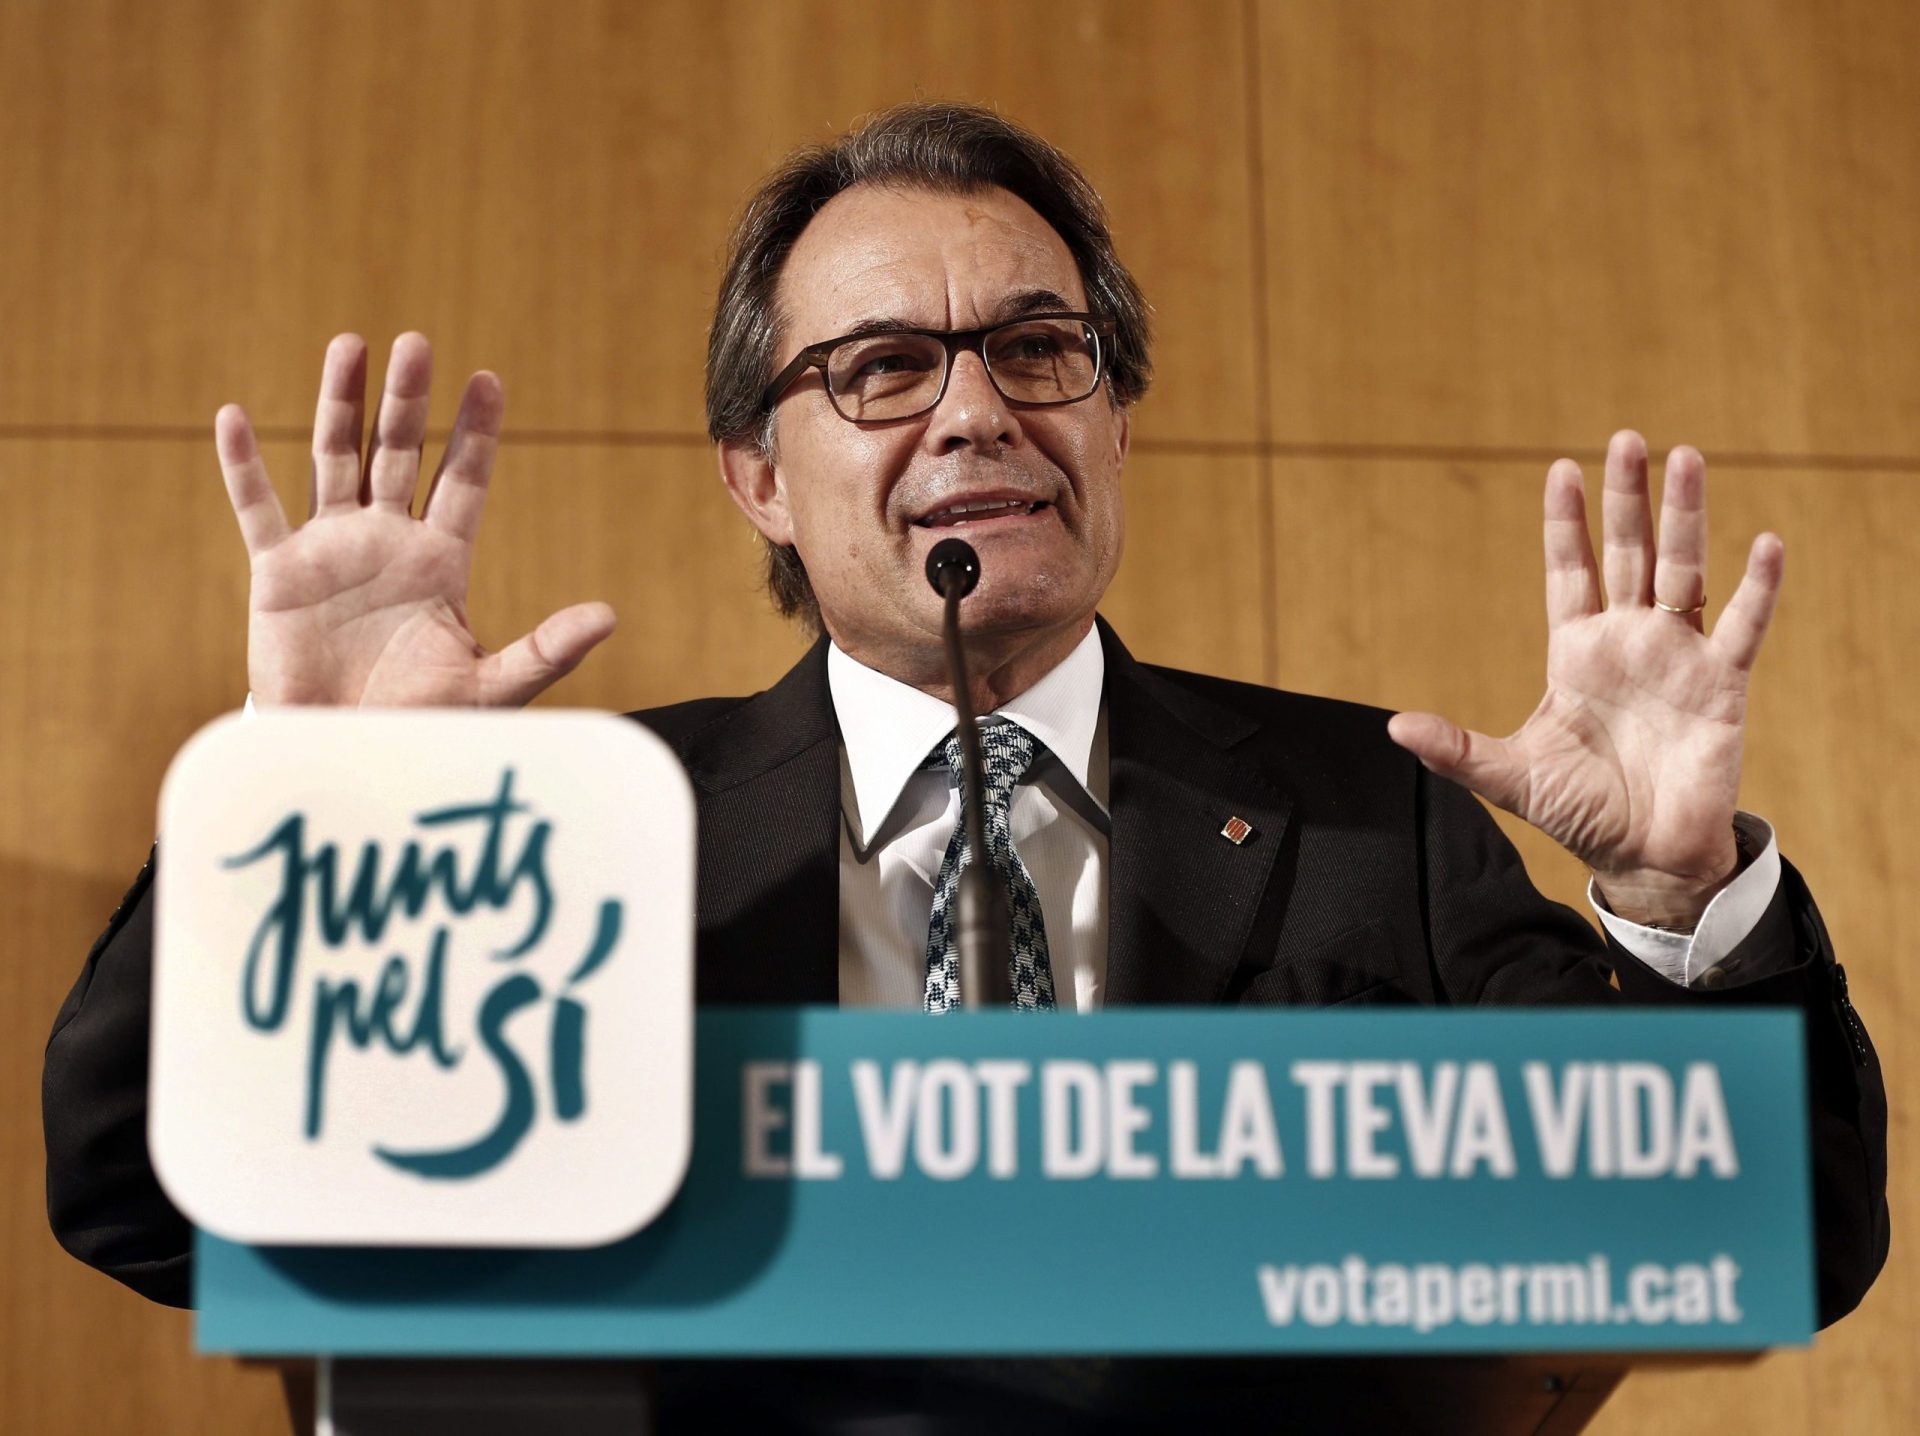 Catalunha: Artur Mas arguido por referendar independência